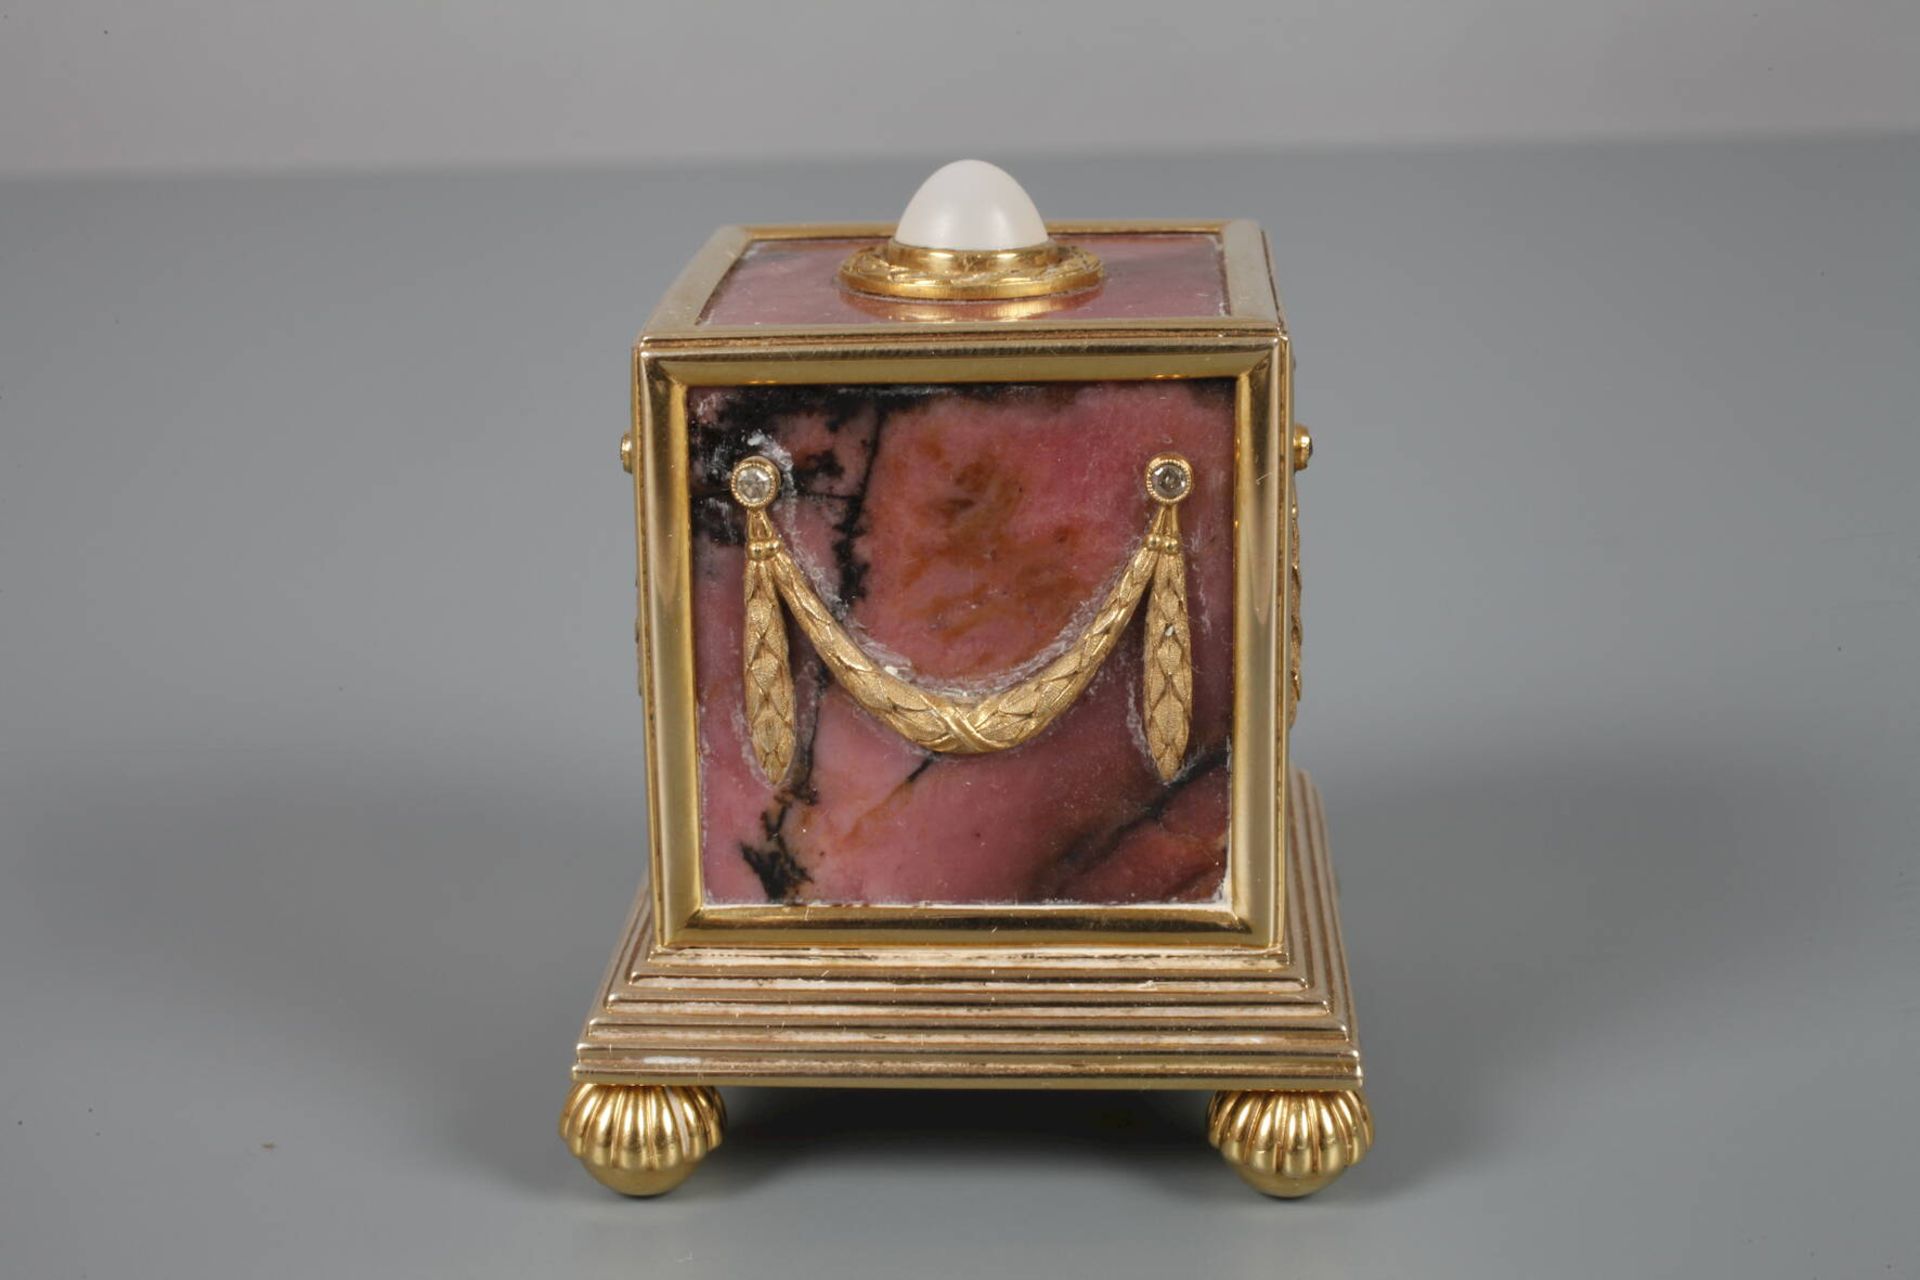 Tischklingel Goldwohl Fabergé, um 1910, am Boden eine sehr undeutliche winzige Punze, eventuell - Bild 3 aus 7